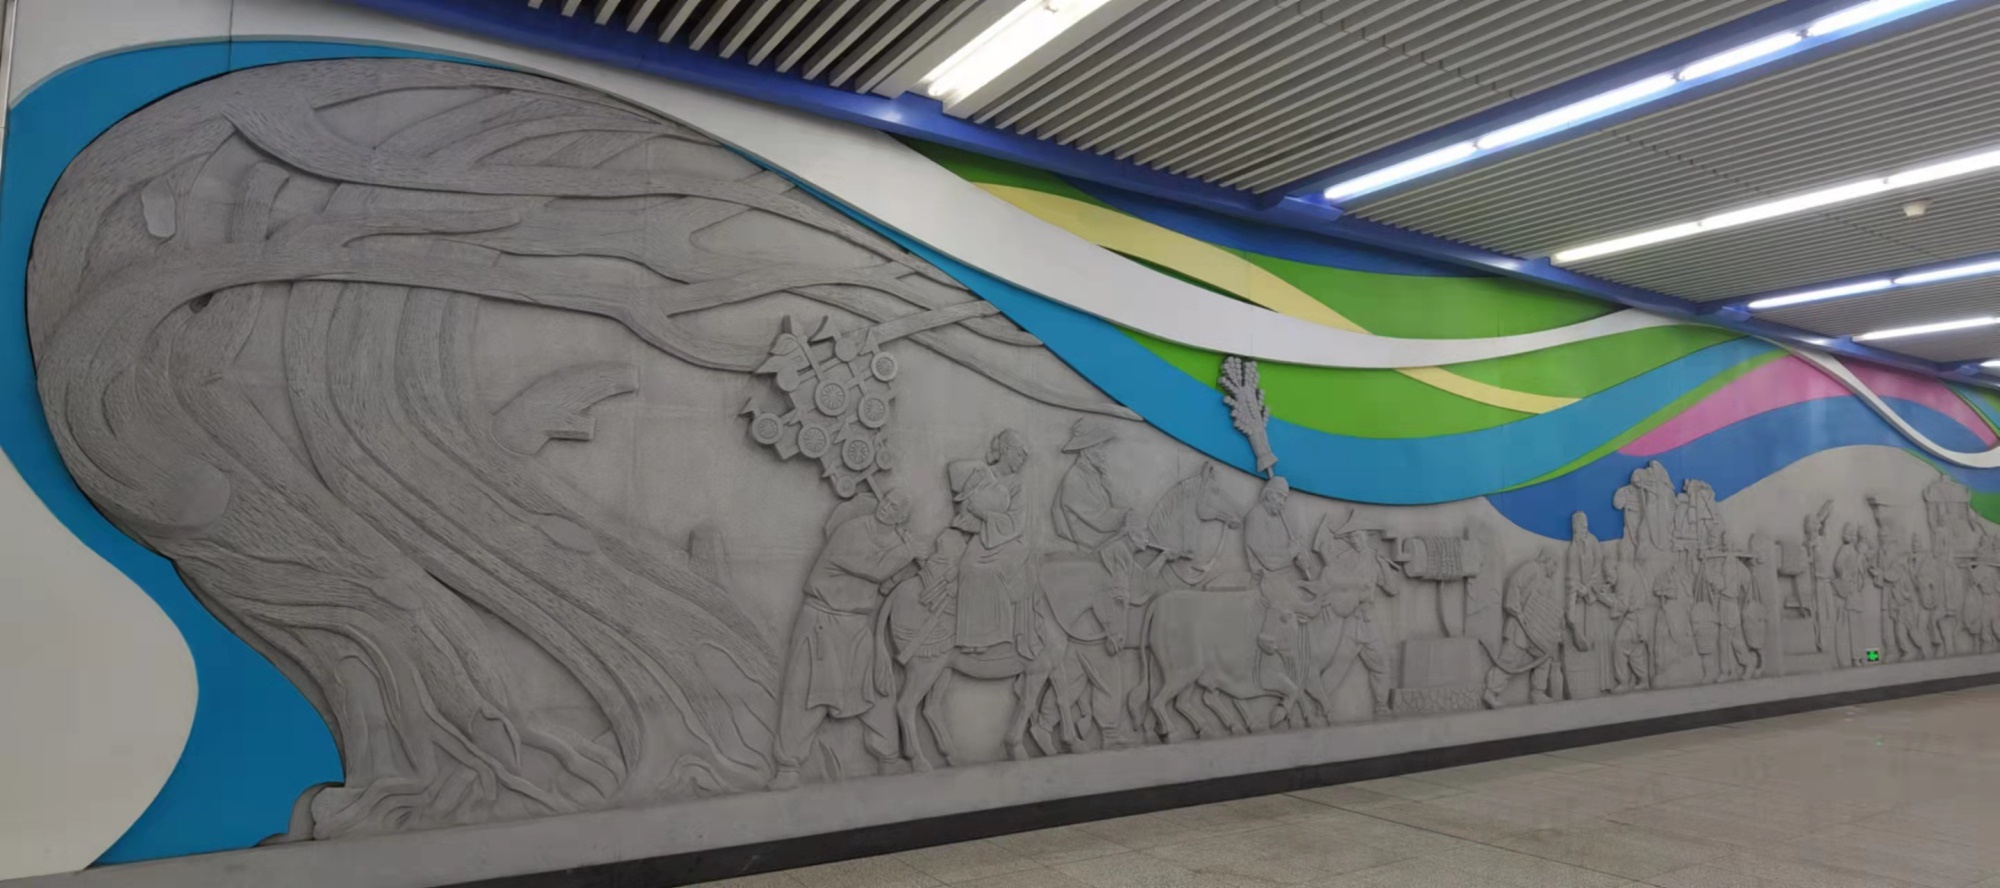 别有洞天!北京地铁站的壁画你见过几幅